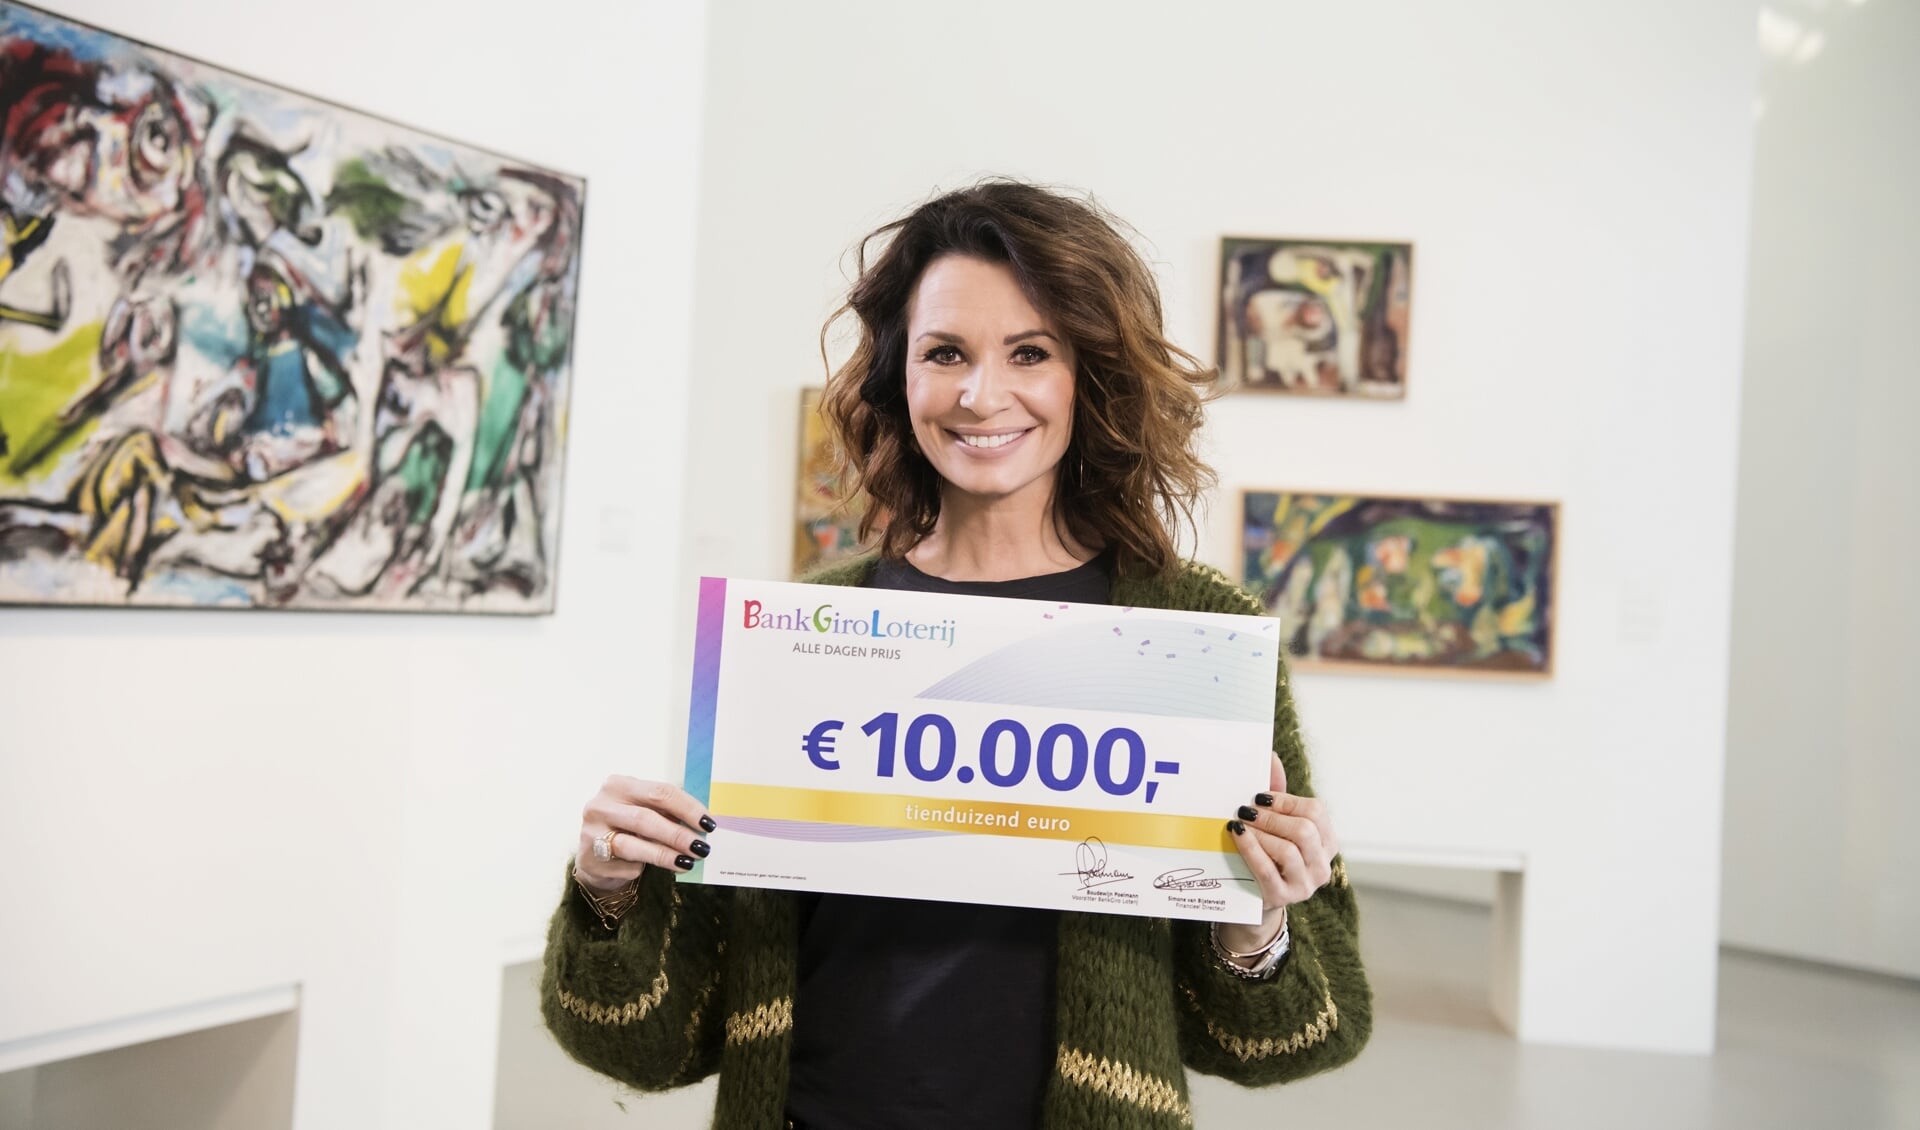 BankGiro Loterij-ambassadeur Leontine Borsato met de cheque.